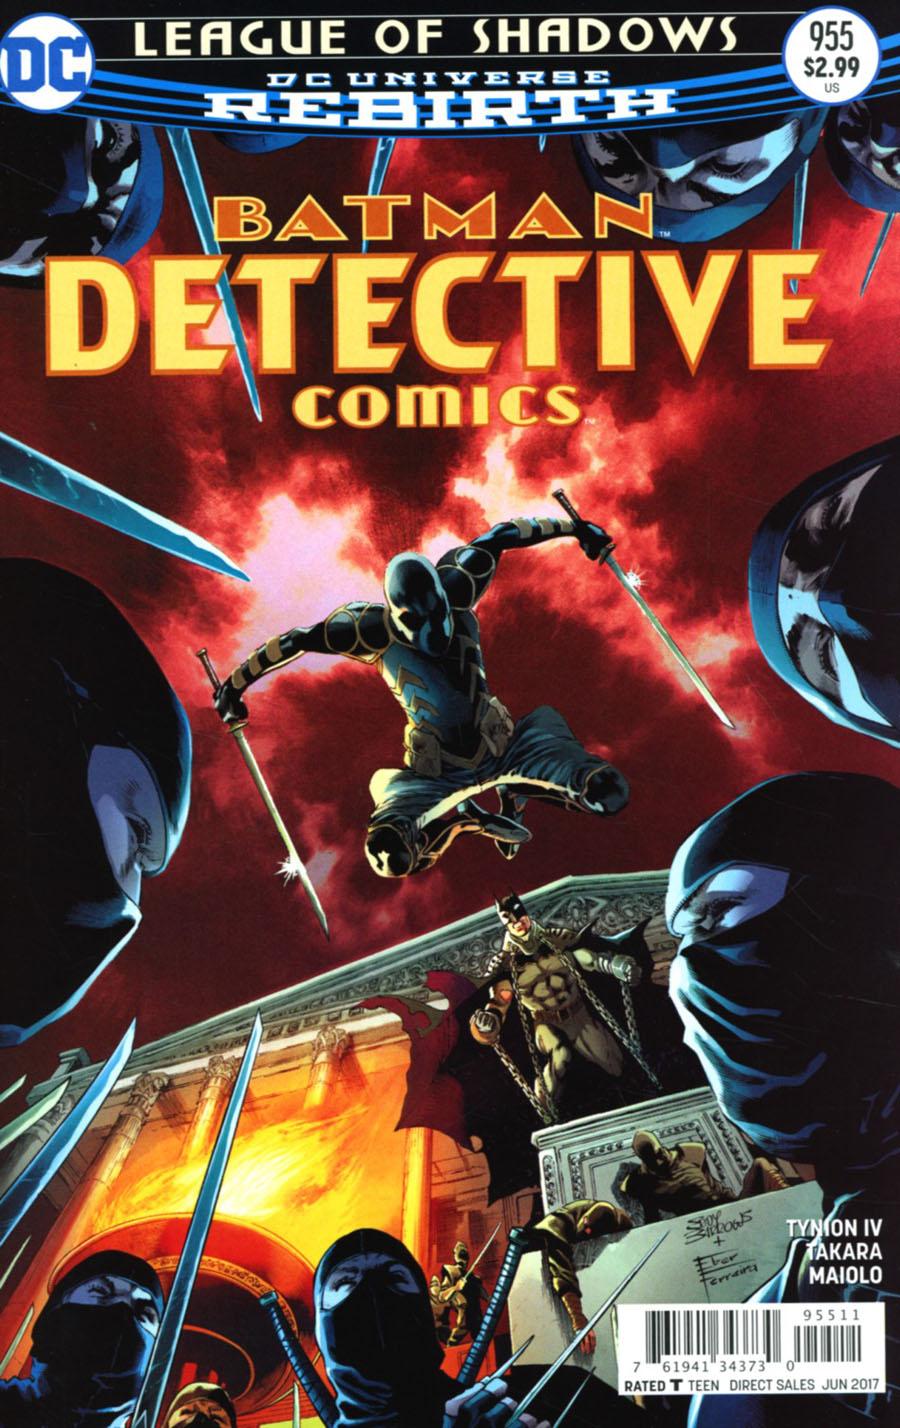 Detective Comics Vol. 2 #955